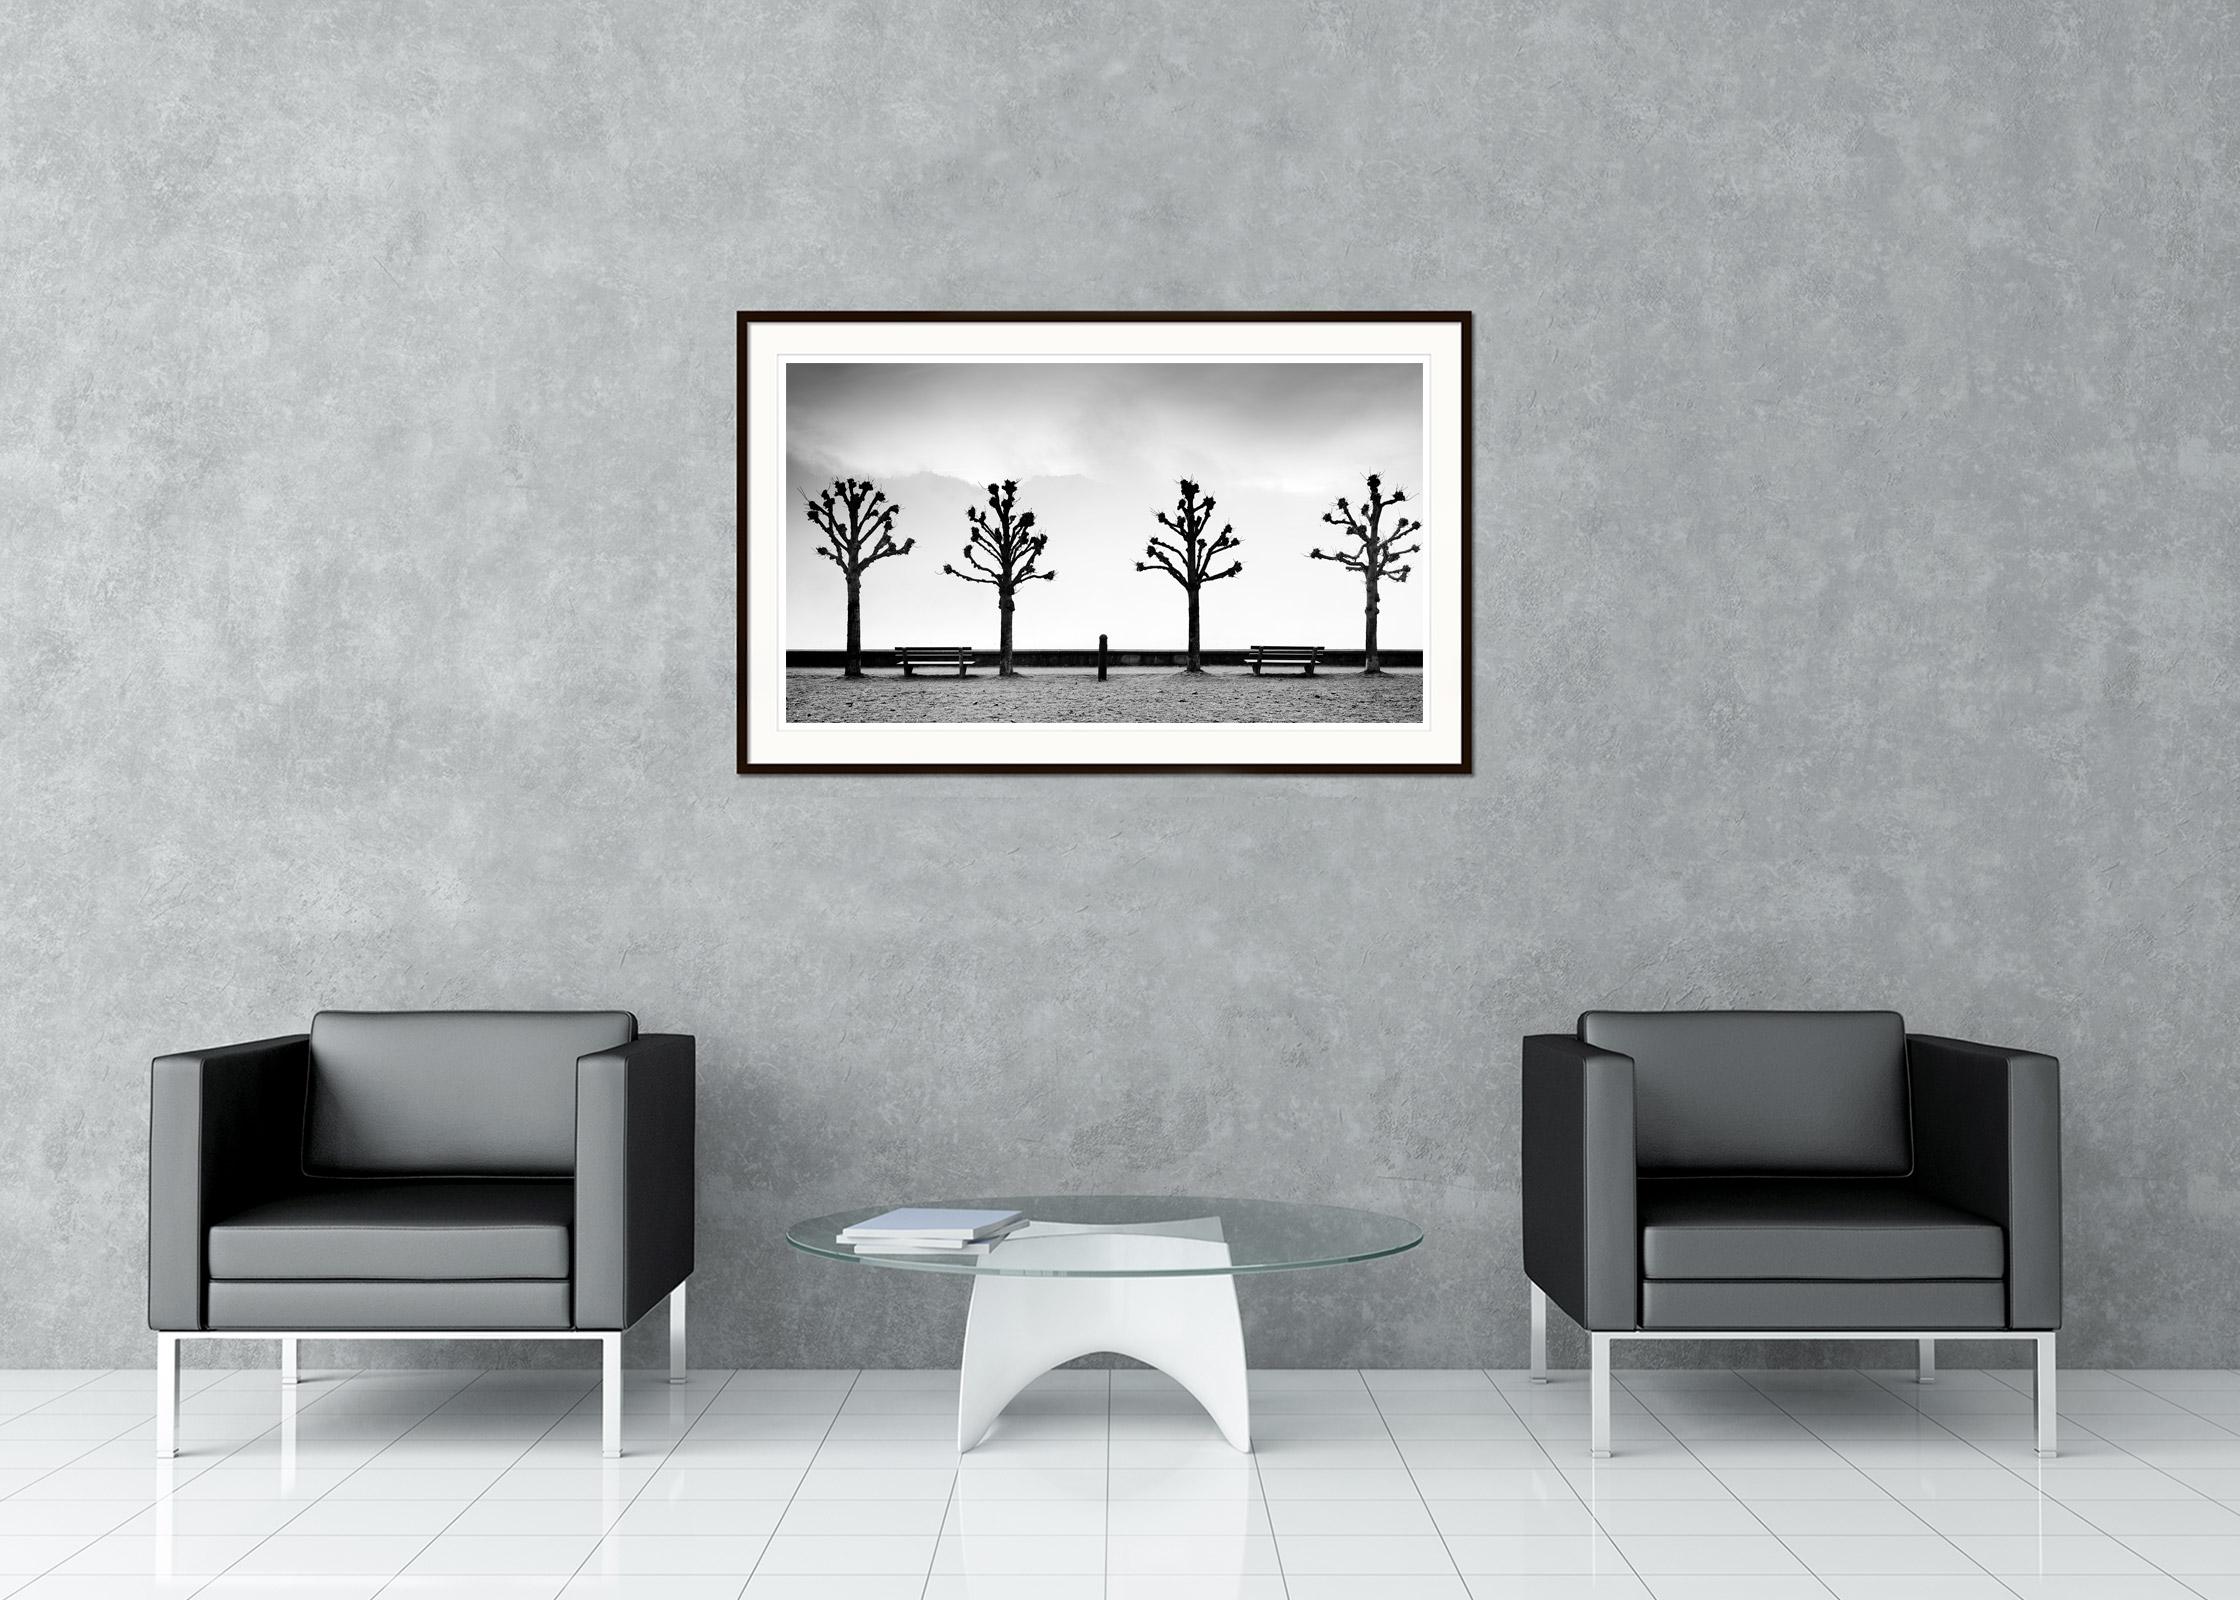 Schwarz-Weiß-Fotografie von Landschaften. Kastanienbäume an der Promenade im historischen Gmunden, Österreich. Pigmenttintendruck in einer limitierten Auflage von 8 Exemplaren. Alle Drucke von Gerald Berghammer werden auf Bestellung in limitierter